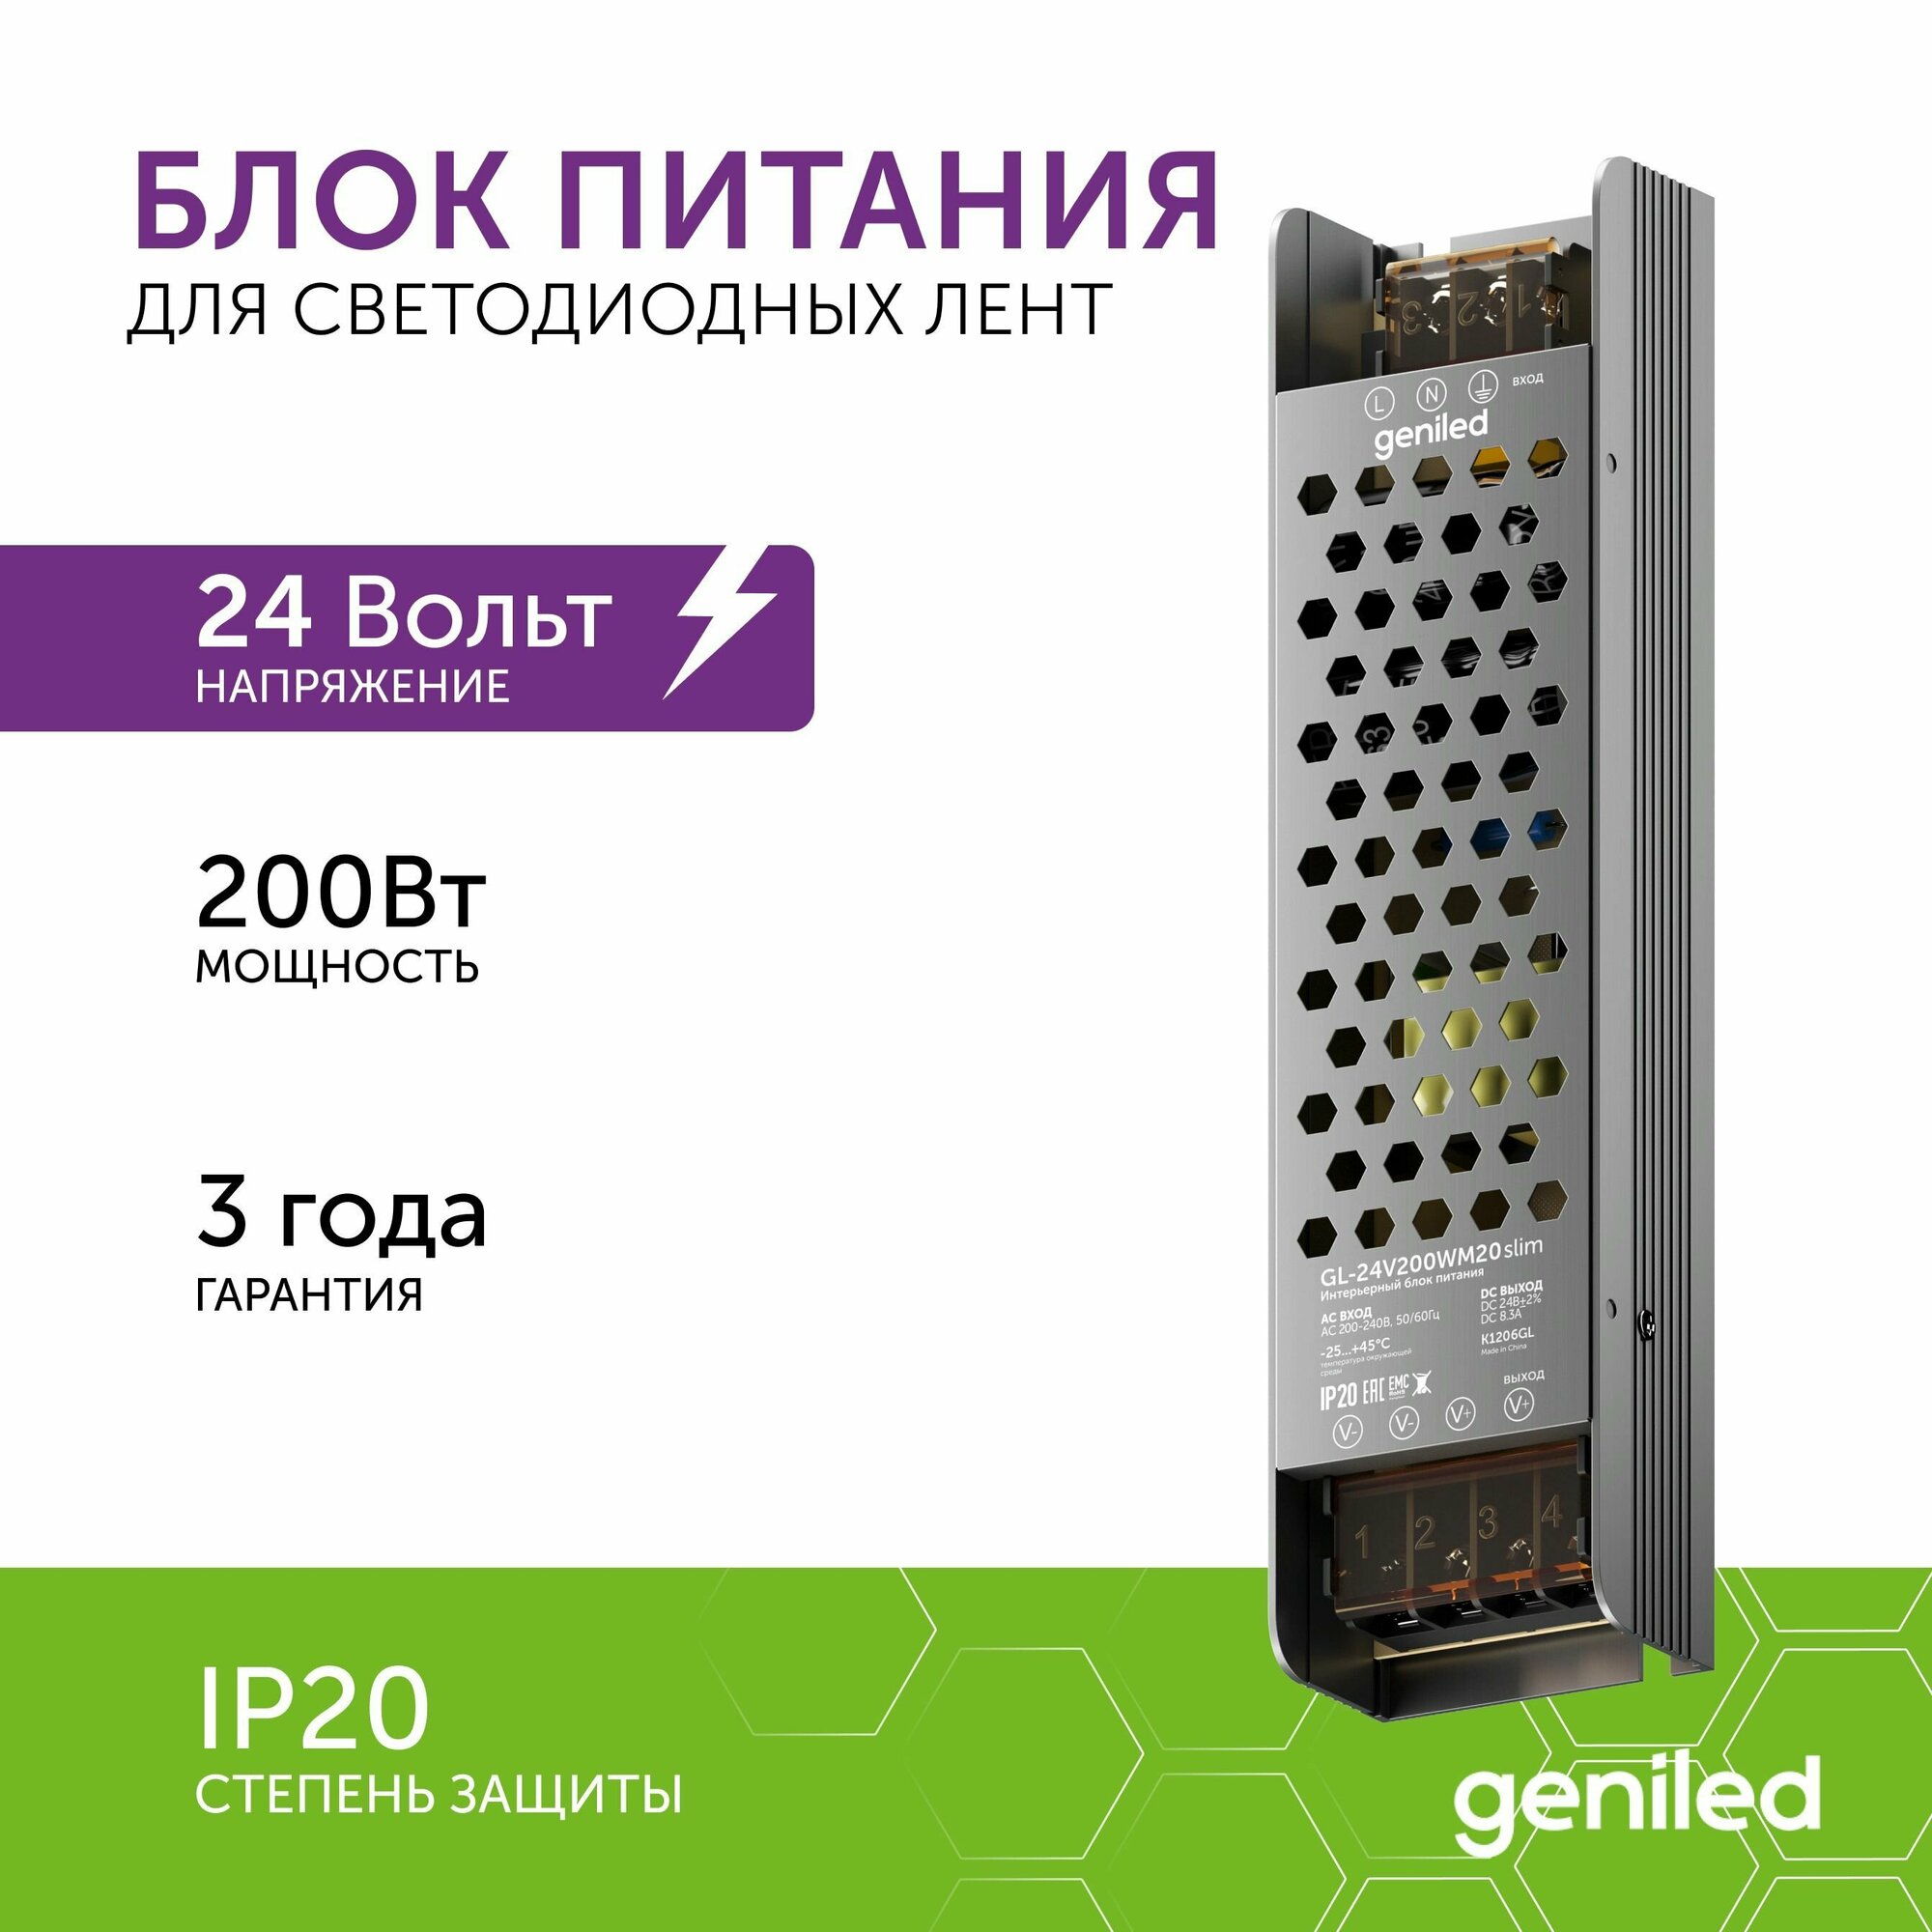 Блок питания Geniled GL-24V200WM20 slim - для светодиодной ленты / Мощность - 200 Вт / Вых. Напряжение - 24 В / Вых. Ток - 8,3 А / IP20